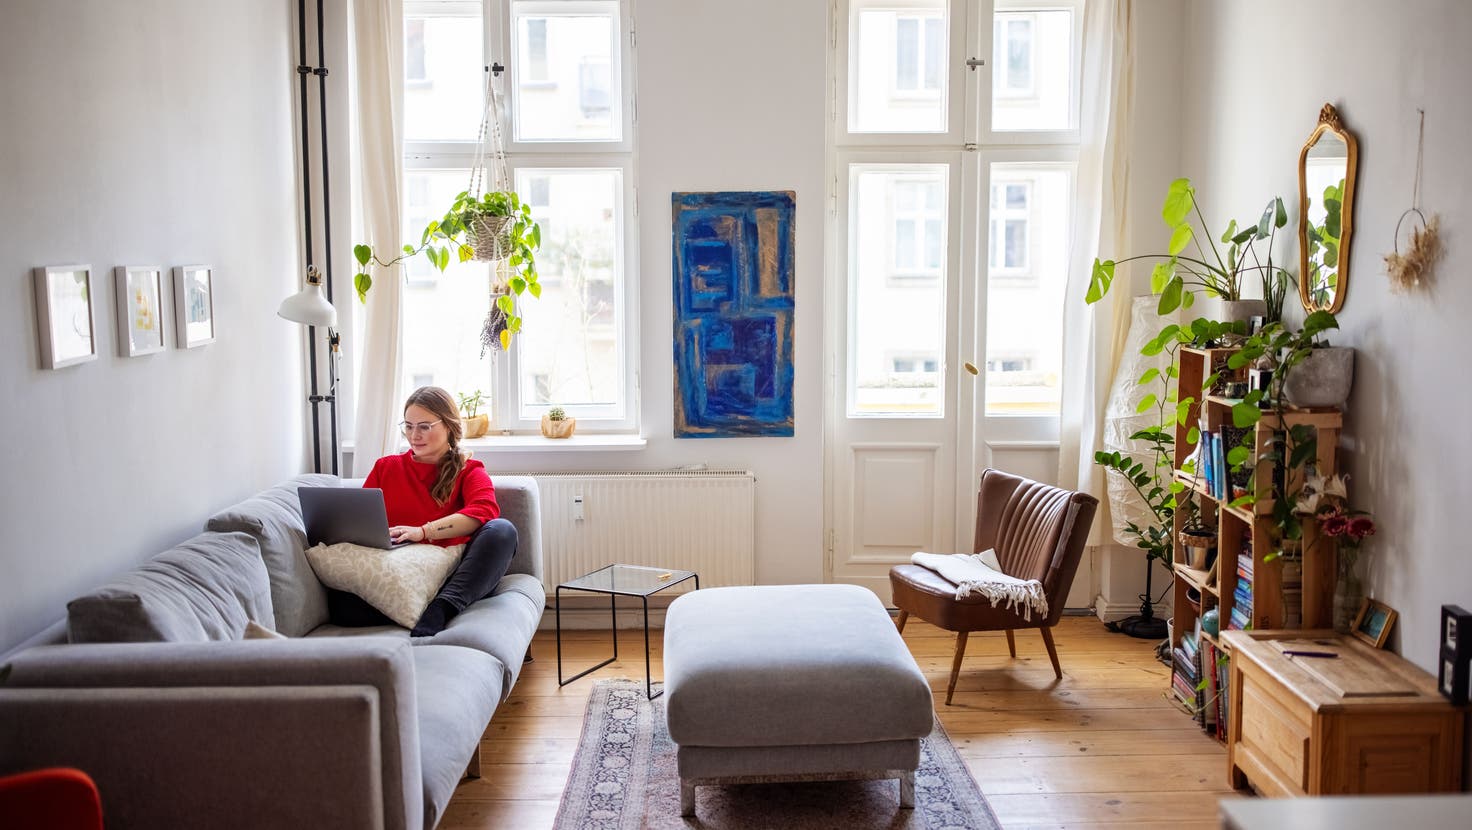 Daten für St.Gallen Airbnb Angebote haben sich verdreifacht